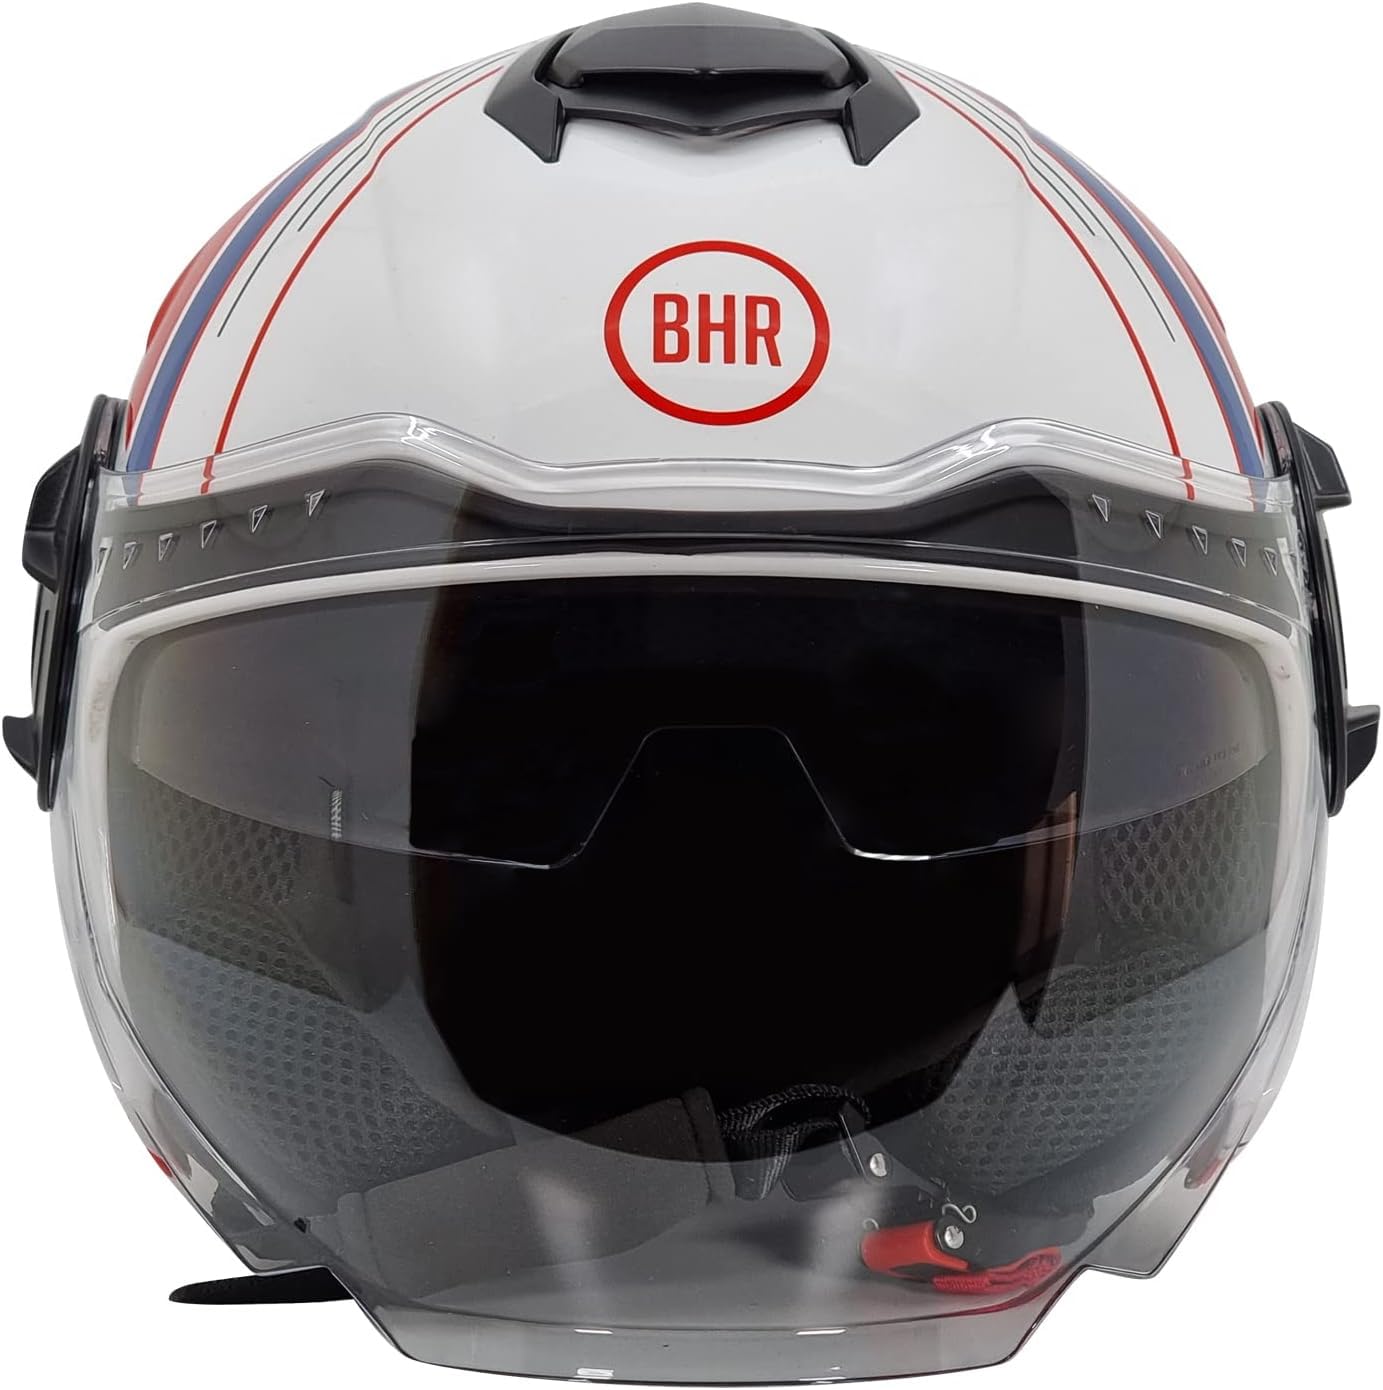 BHR Jet Helm Double Visor 830 FLASH, Scooter Helm mit ECE 22.06 Zulassung, Leichter & komfortabler Jet Helm mit innenliegender Sonnenblende, Cool White, XS